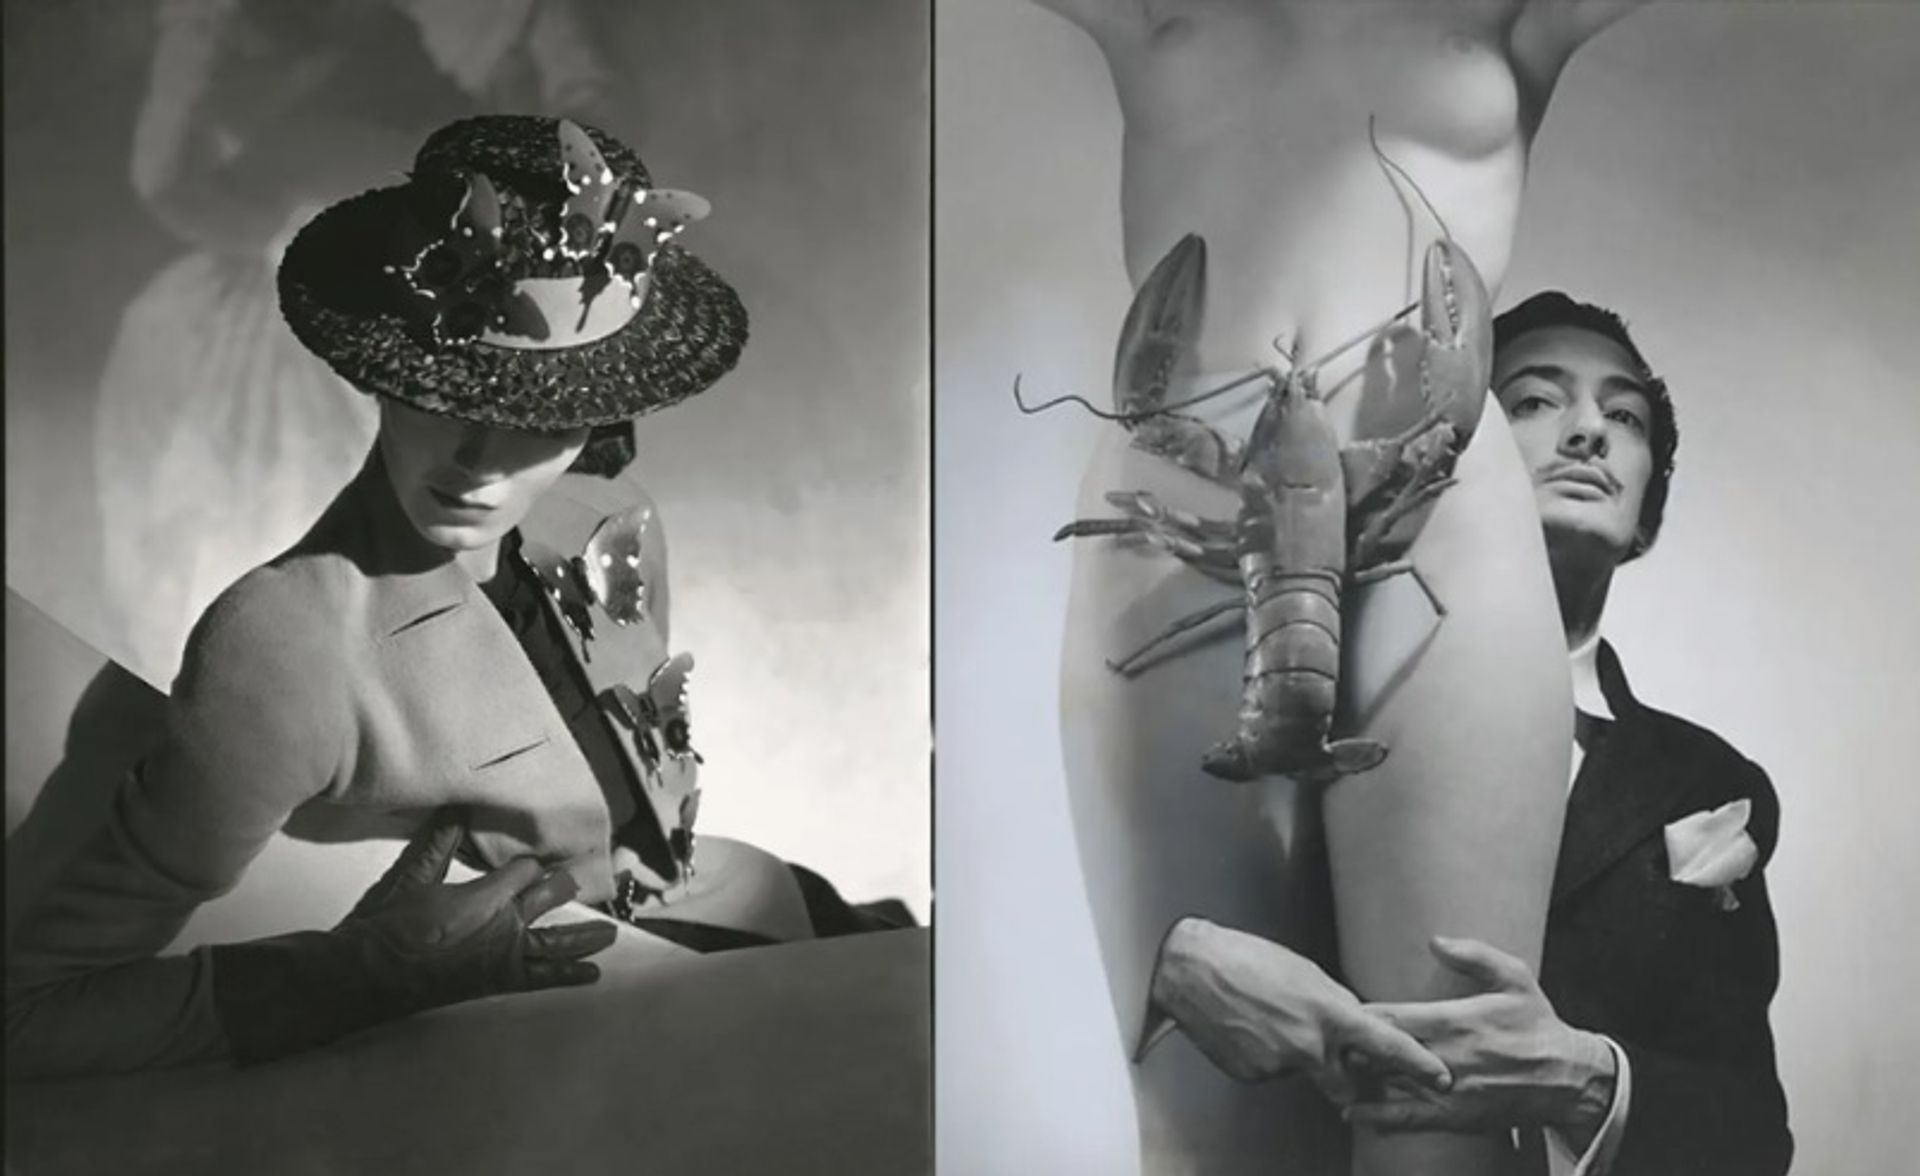 אלזה סקיאפרלי צולמה על ידי הורסט פ הורסט עבור ווג ארה"ב ב-1937 וסלבדור דאלי על ידי ג'ורג' פלאט לינס ב-1939

© Horst P. Horst, Vogue / Condé Nast; © עזבונו של ג'ורג' פלאט לינס